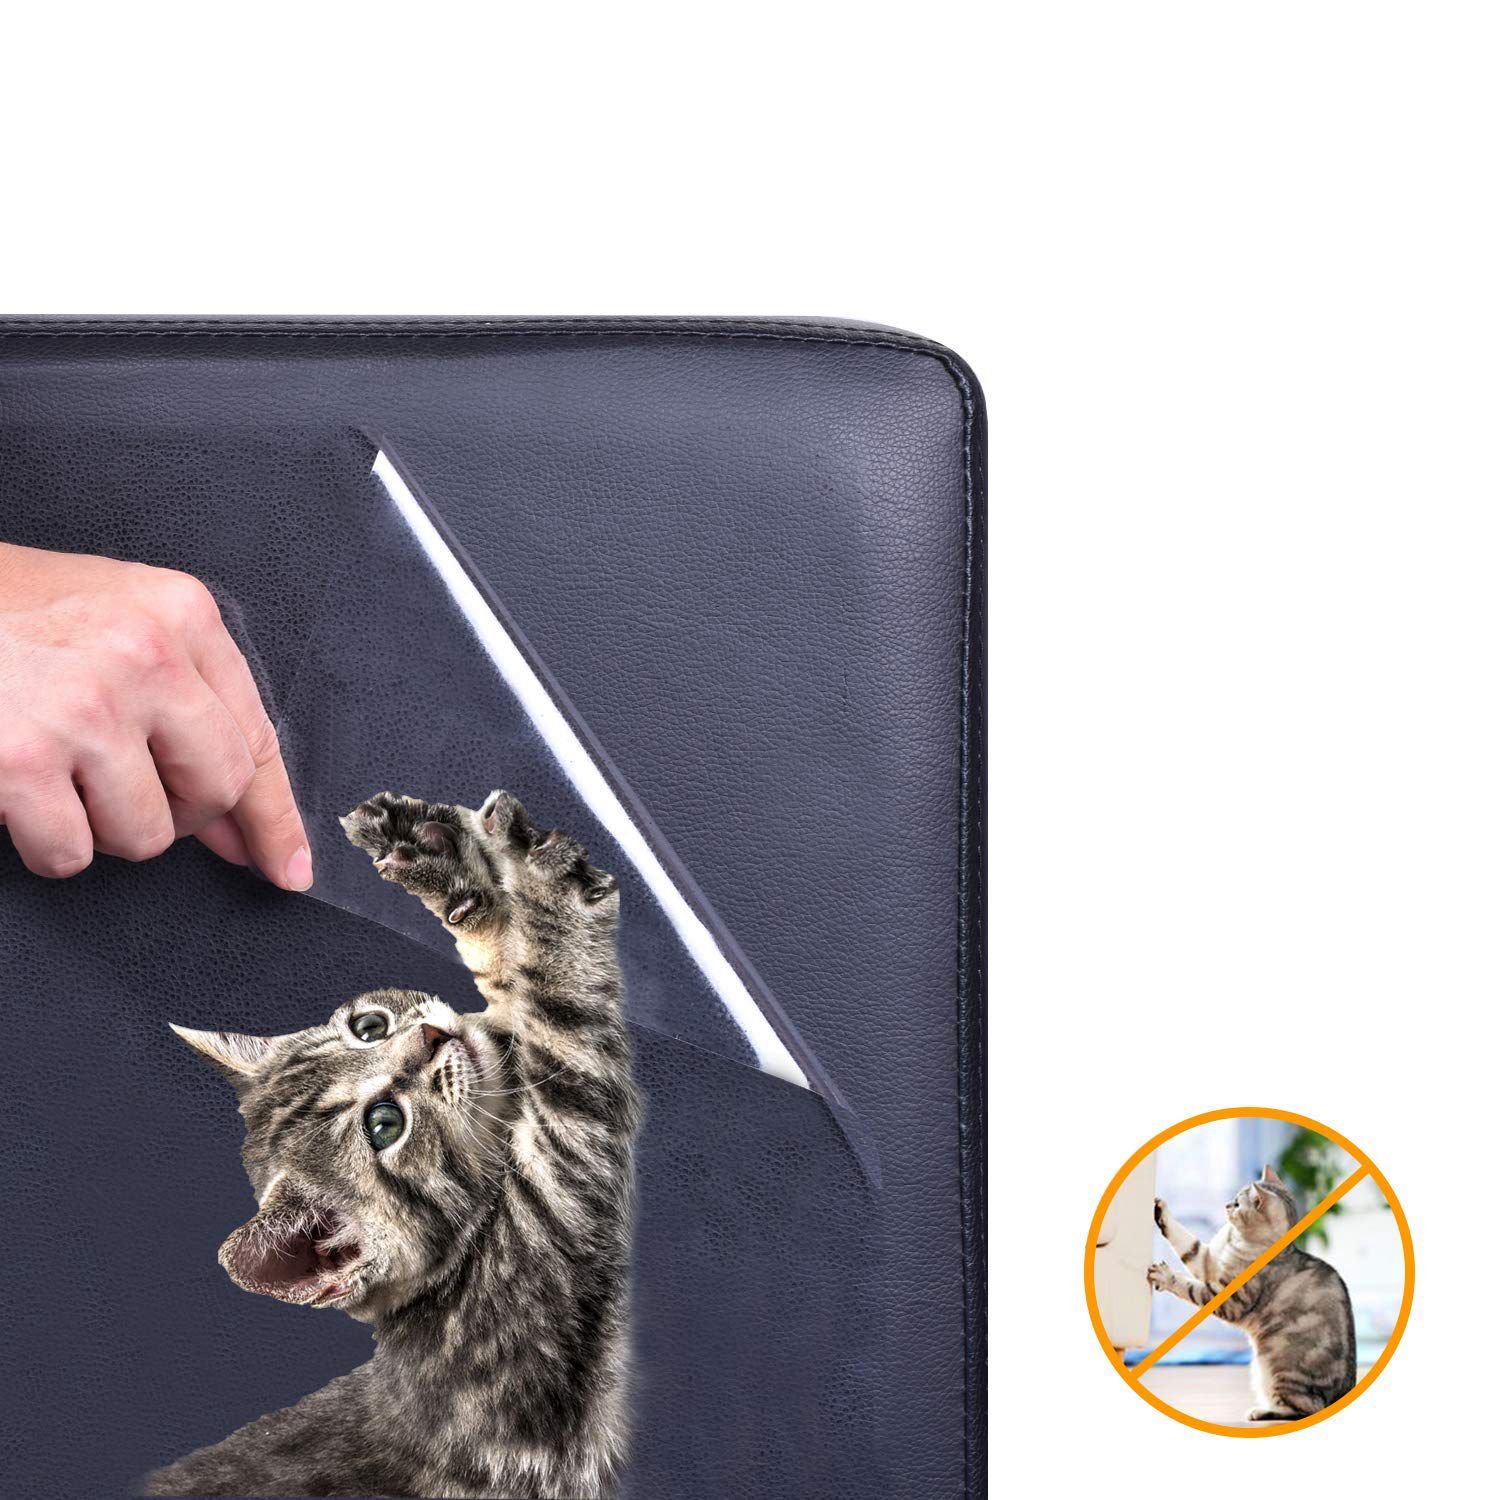 5 pakke møbelbeskyttere fra katte, sofabeskytter til kæledyr, kloebeskytter til kattehunde selvklæbende puder + twist pins